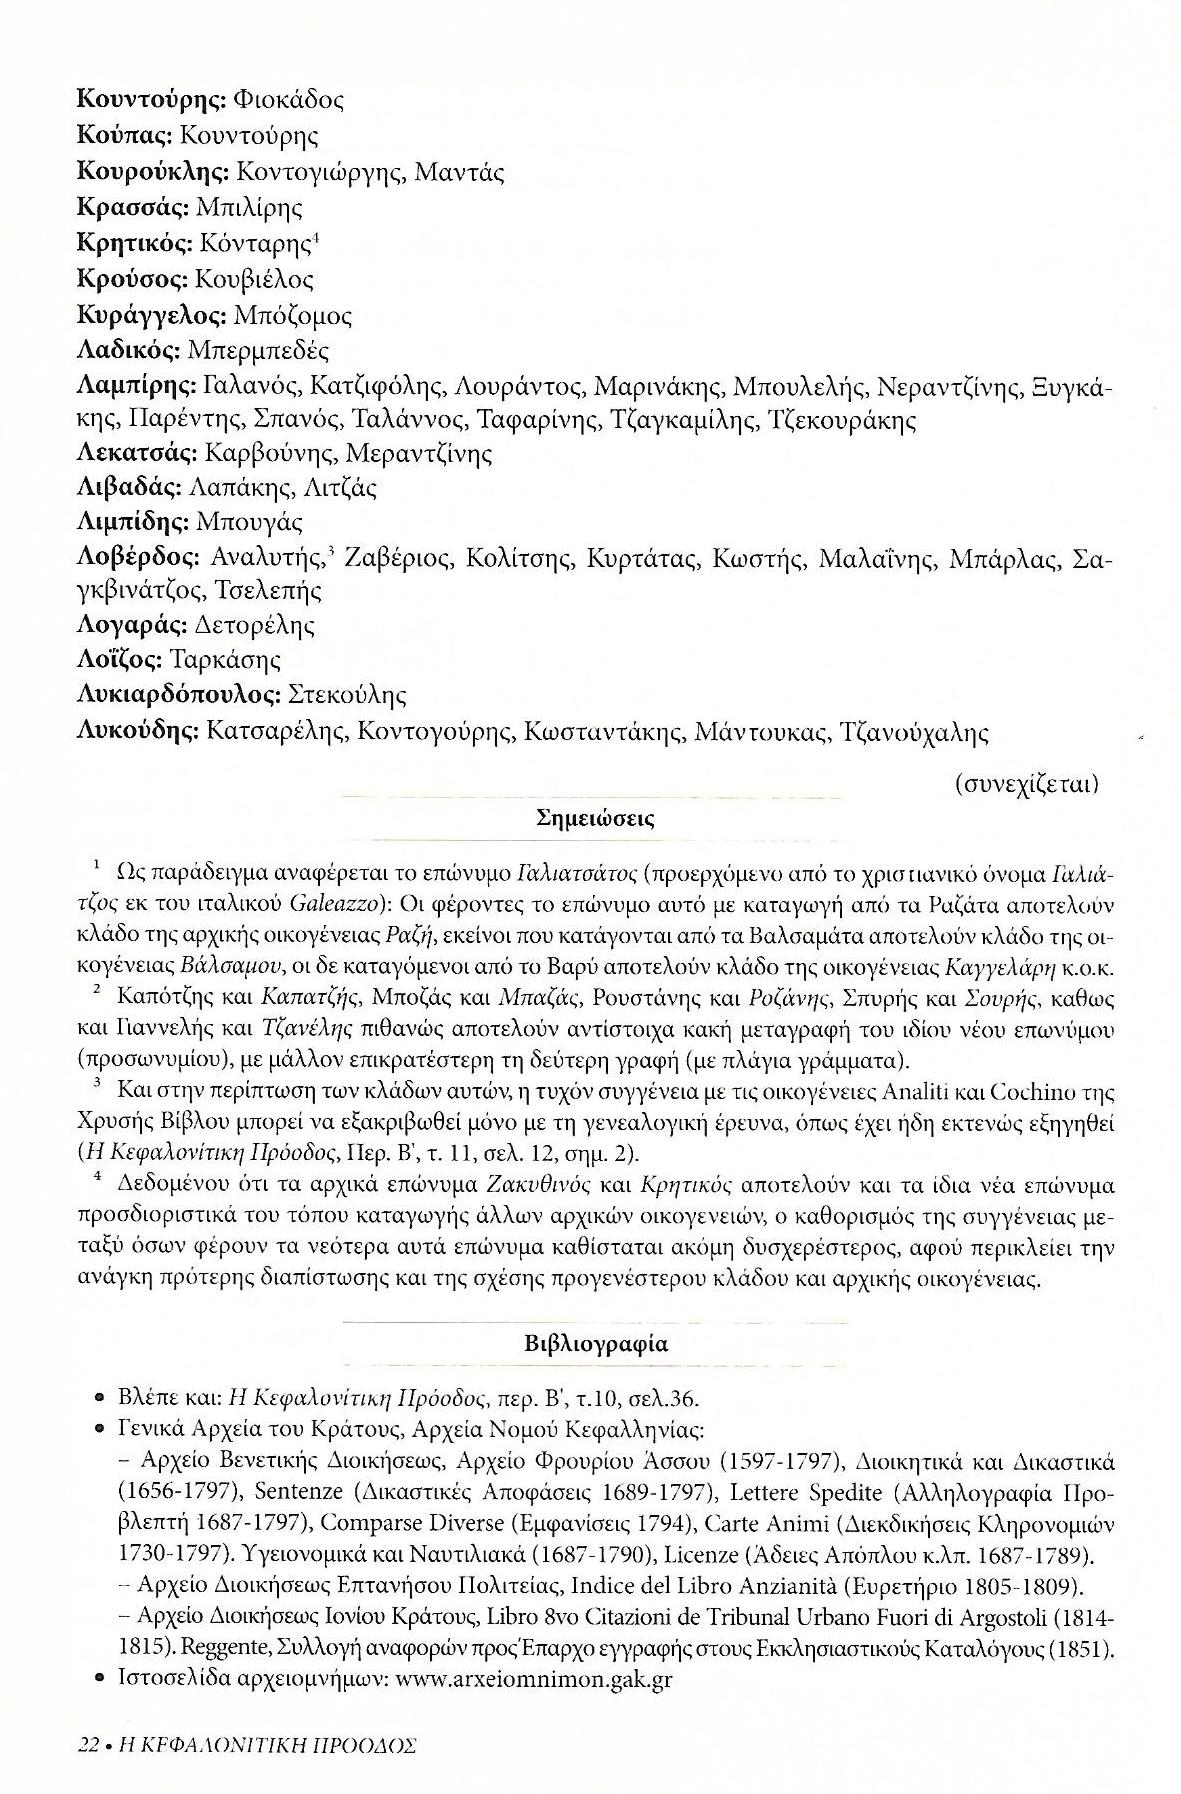 Κεφαλονίτικα επώνυμα , Κεφαλονίτικη Πρόοδος, Β-20, σελ. 22